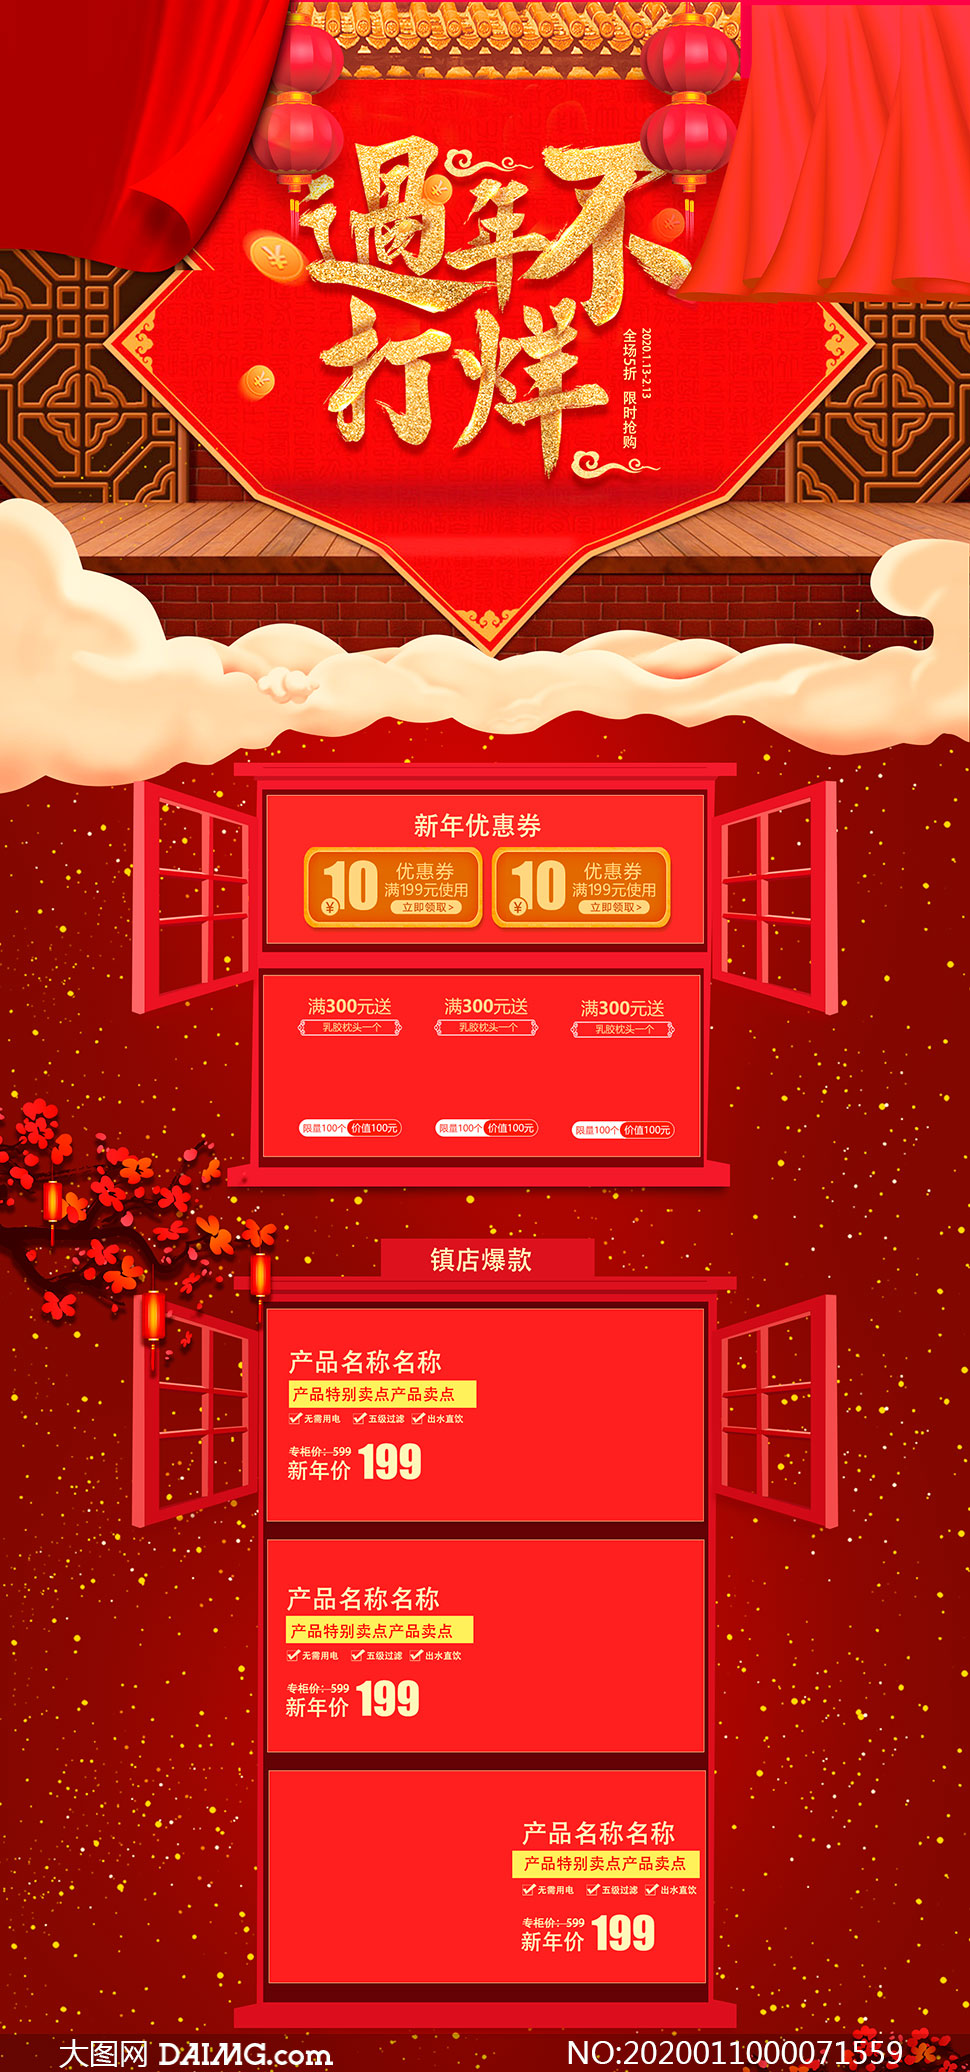 红色喜庆鼠年首页设计模板PSD素材